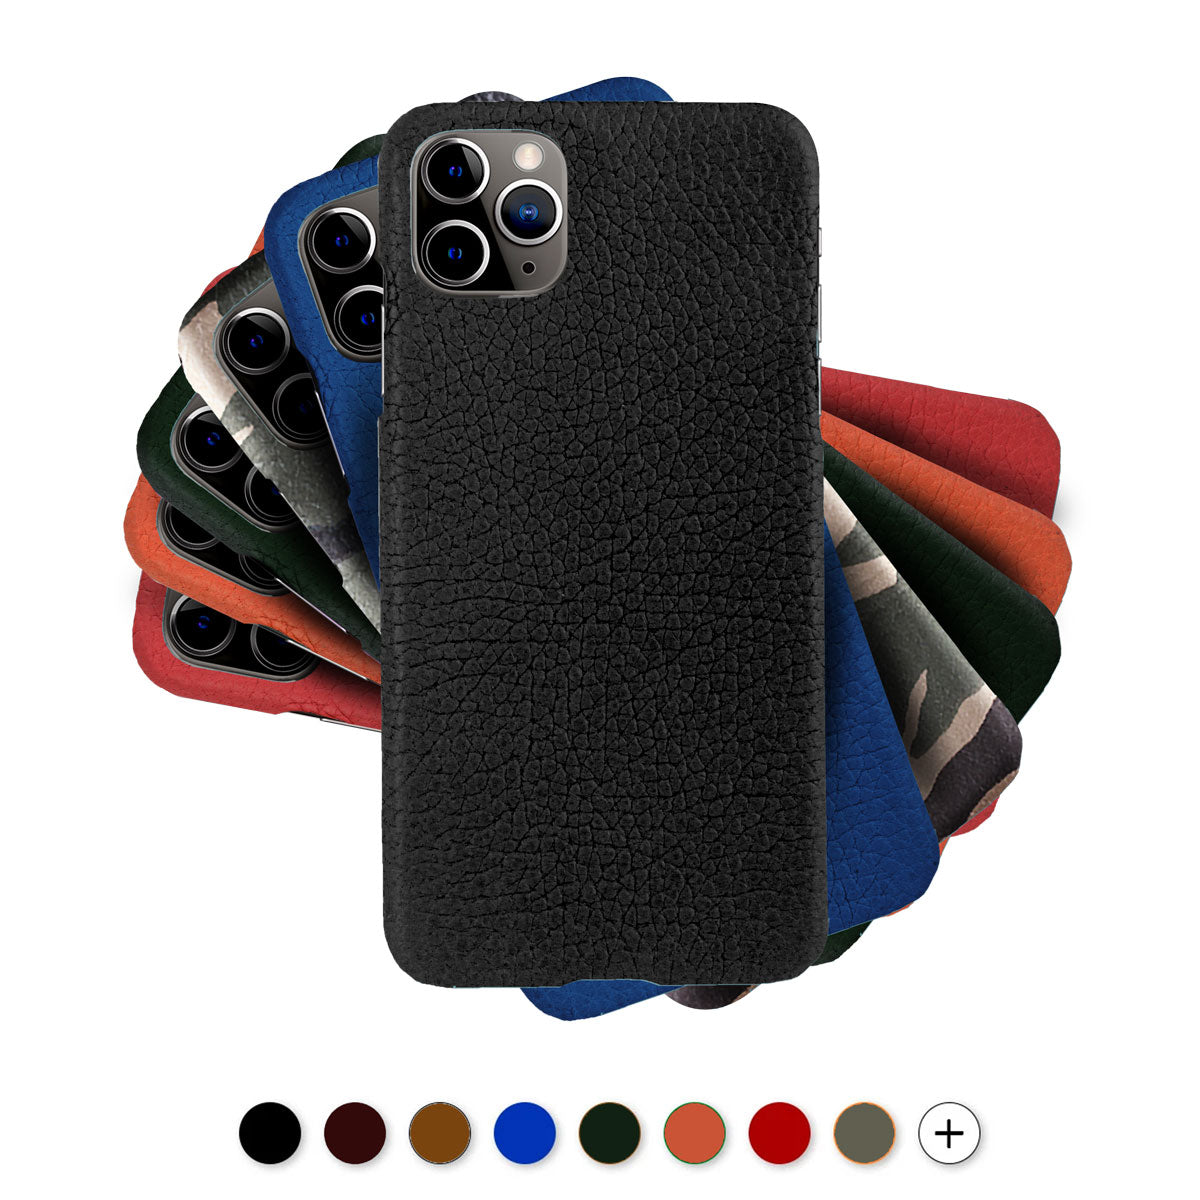 Coque cuir pour iPhone 12 et 11 ( Pro / Max / Mini ) - Buffle , Noir , Marron , Bleu , Rouge , Orange...